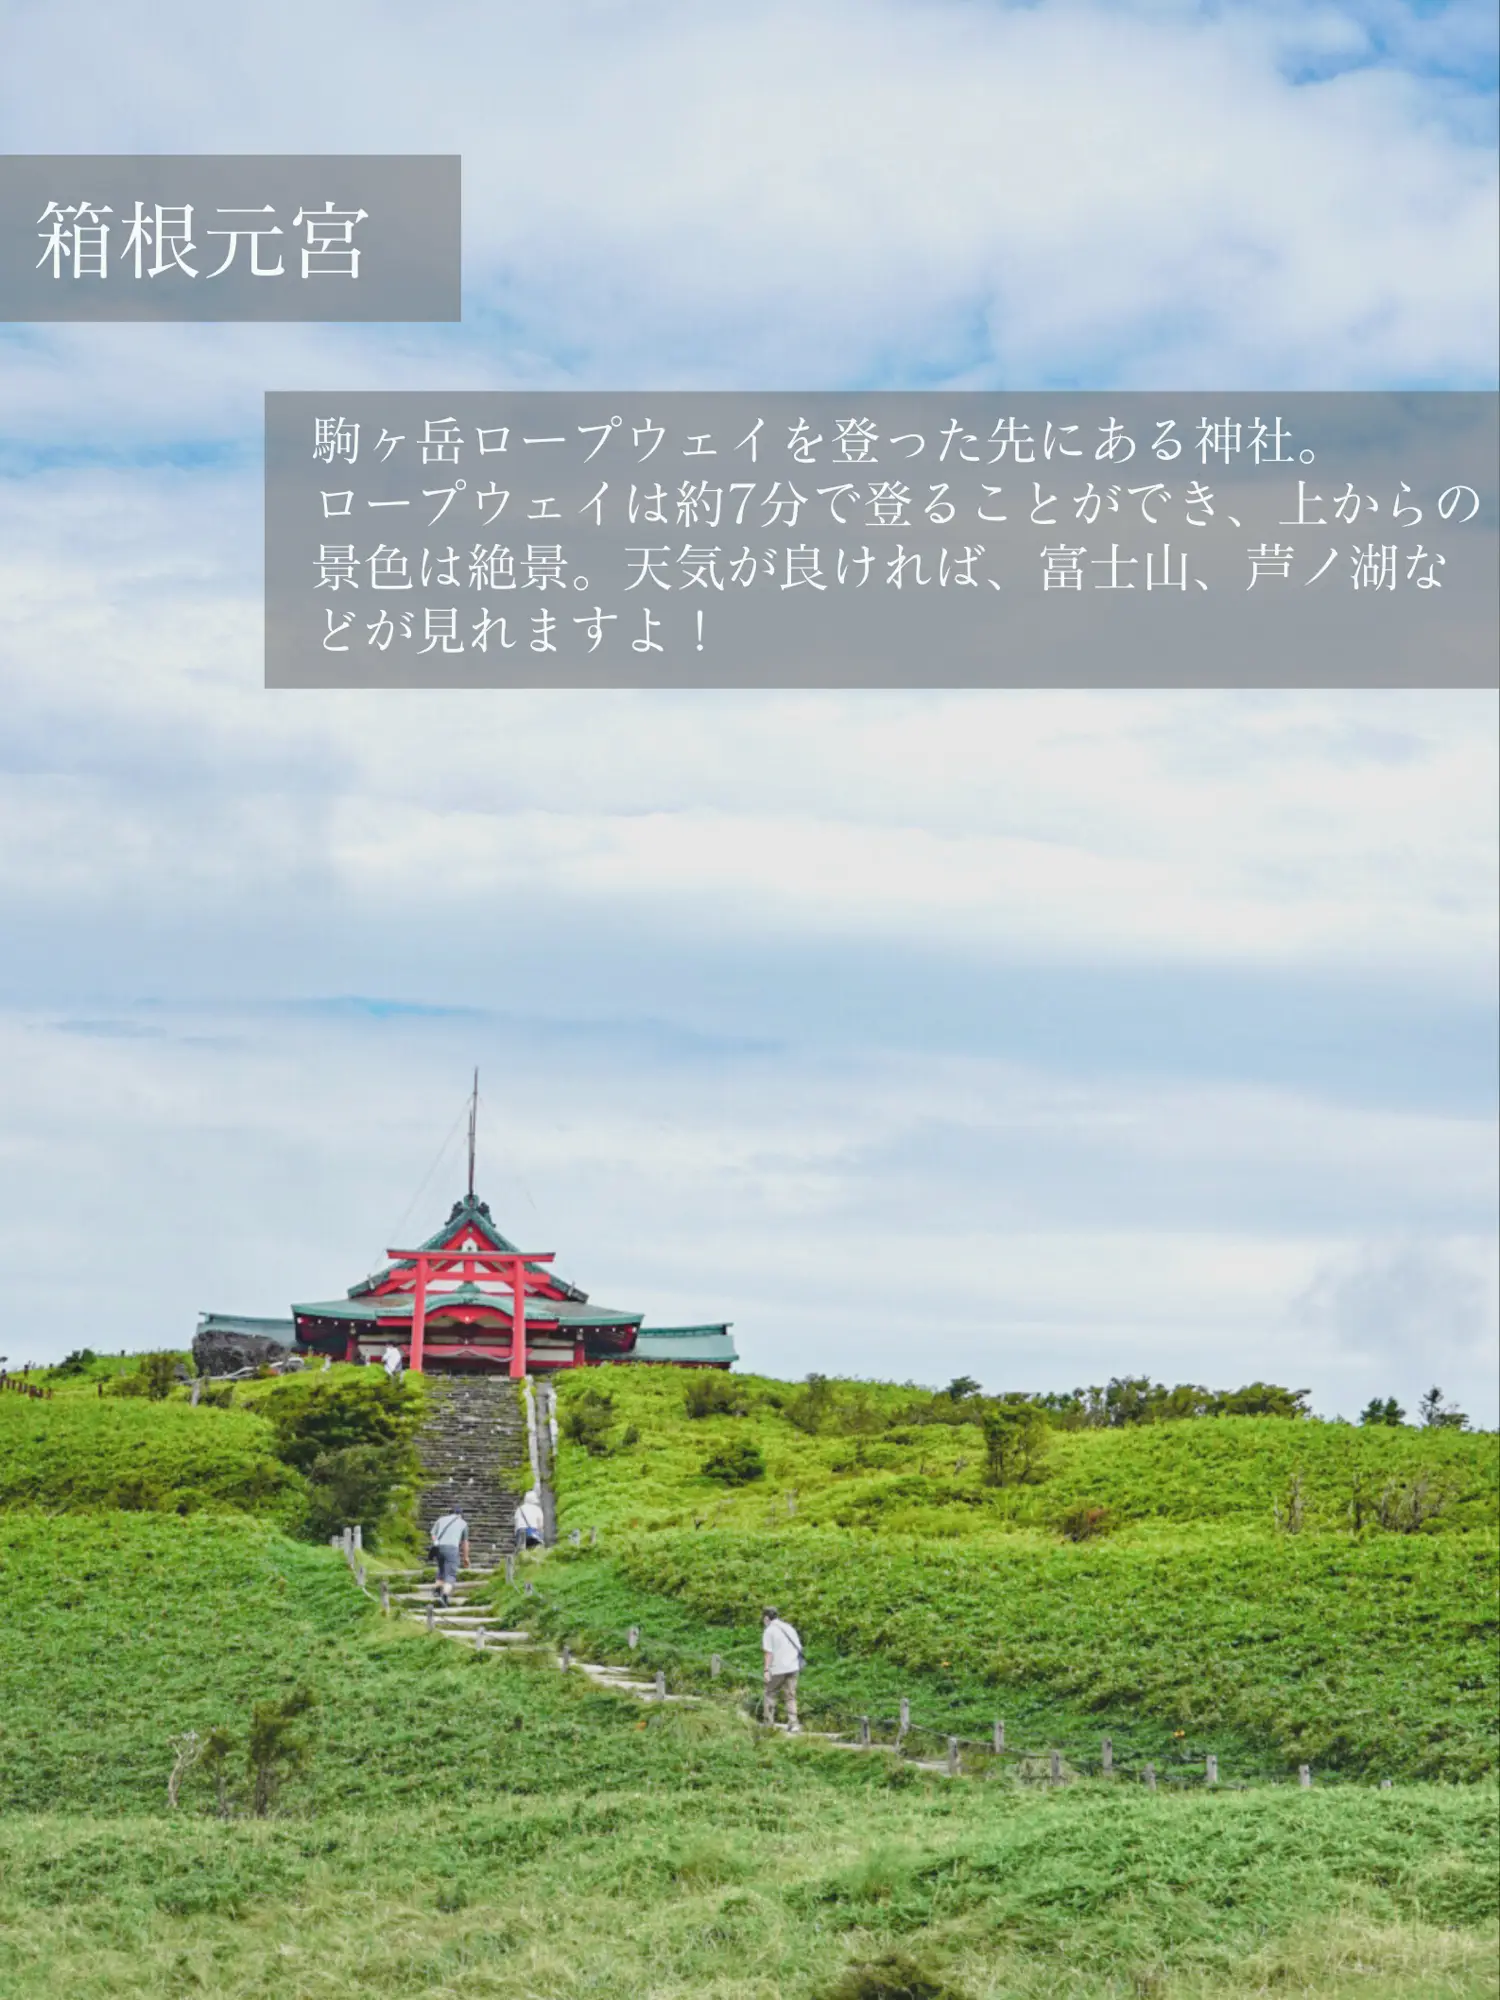 【神奈川県】箱根のパワースポット「天空の神社」が絶景すぎるの画像 (2枚目)